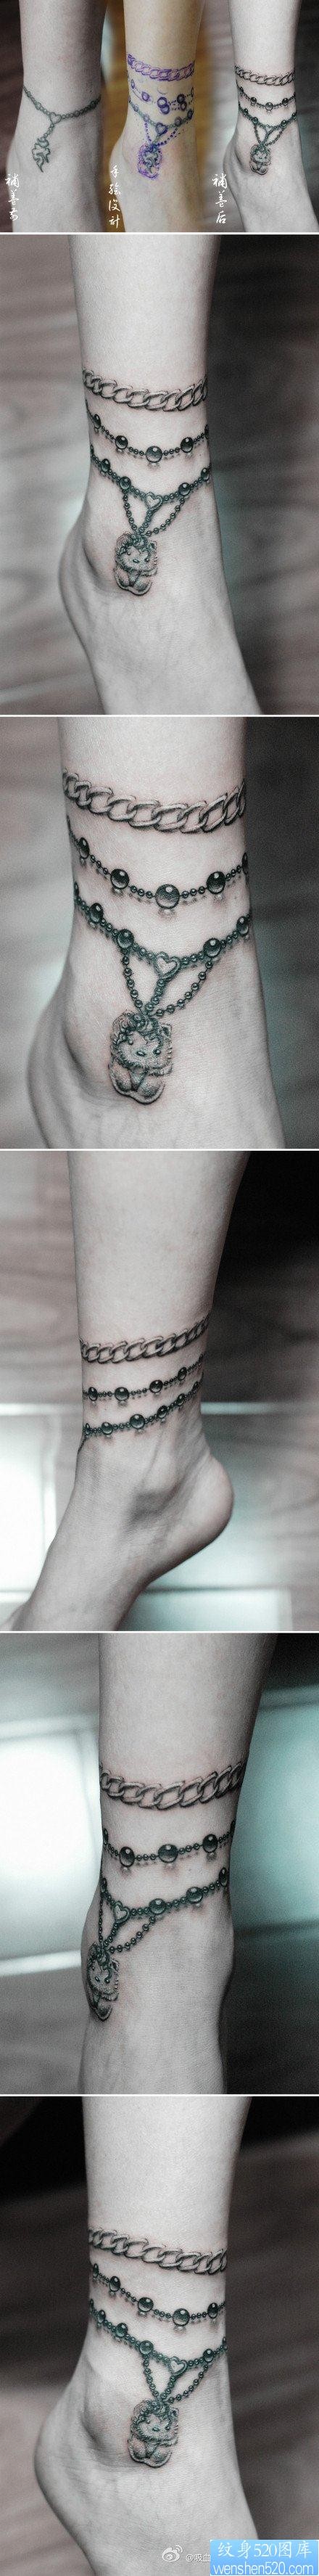 美女腿部唯美流行的脚链纹身图片